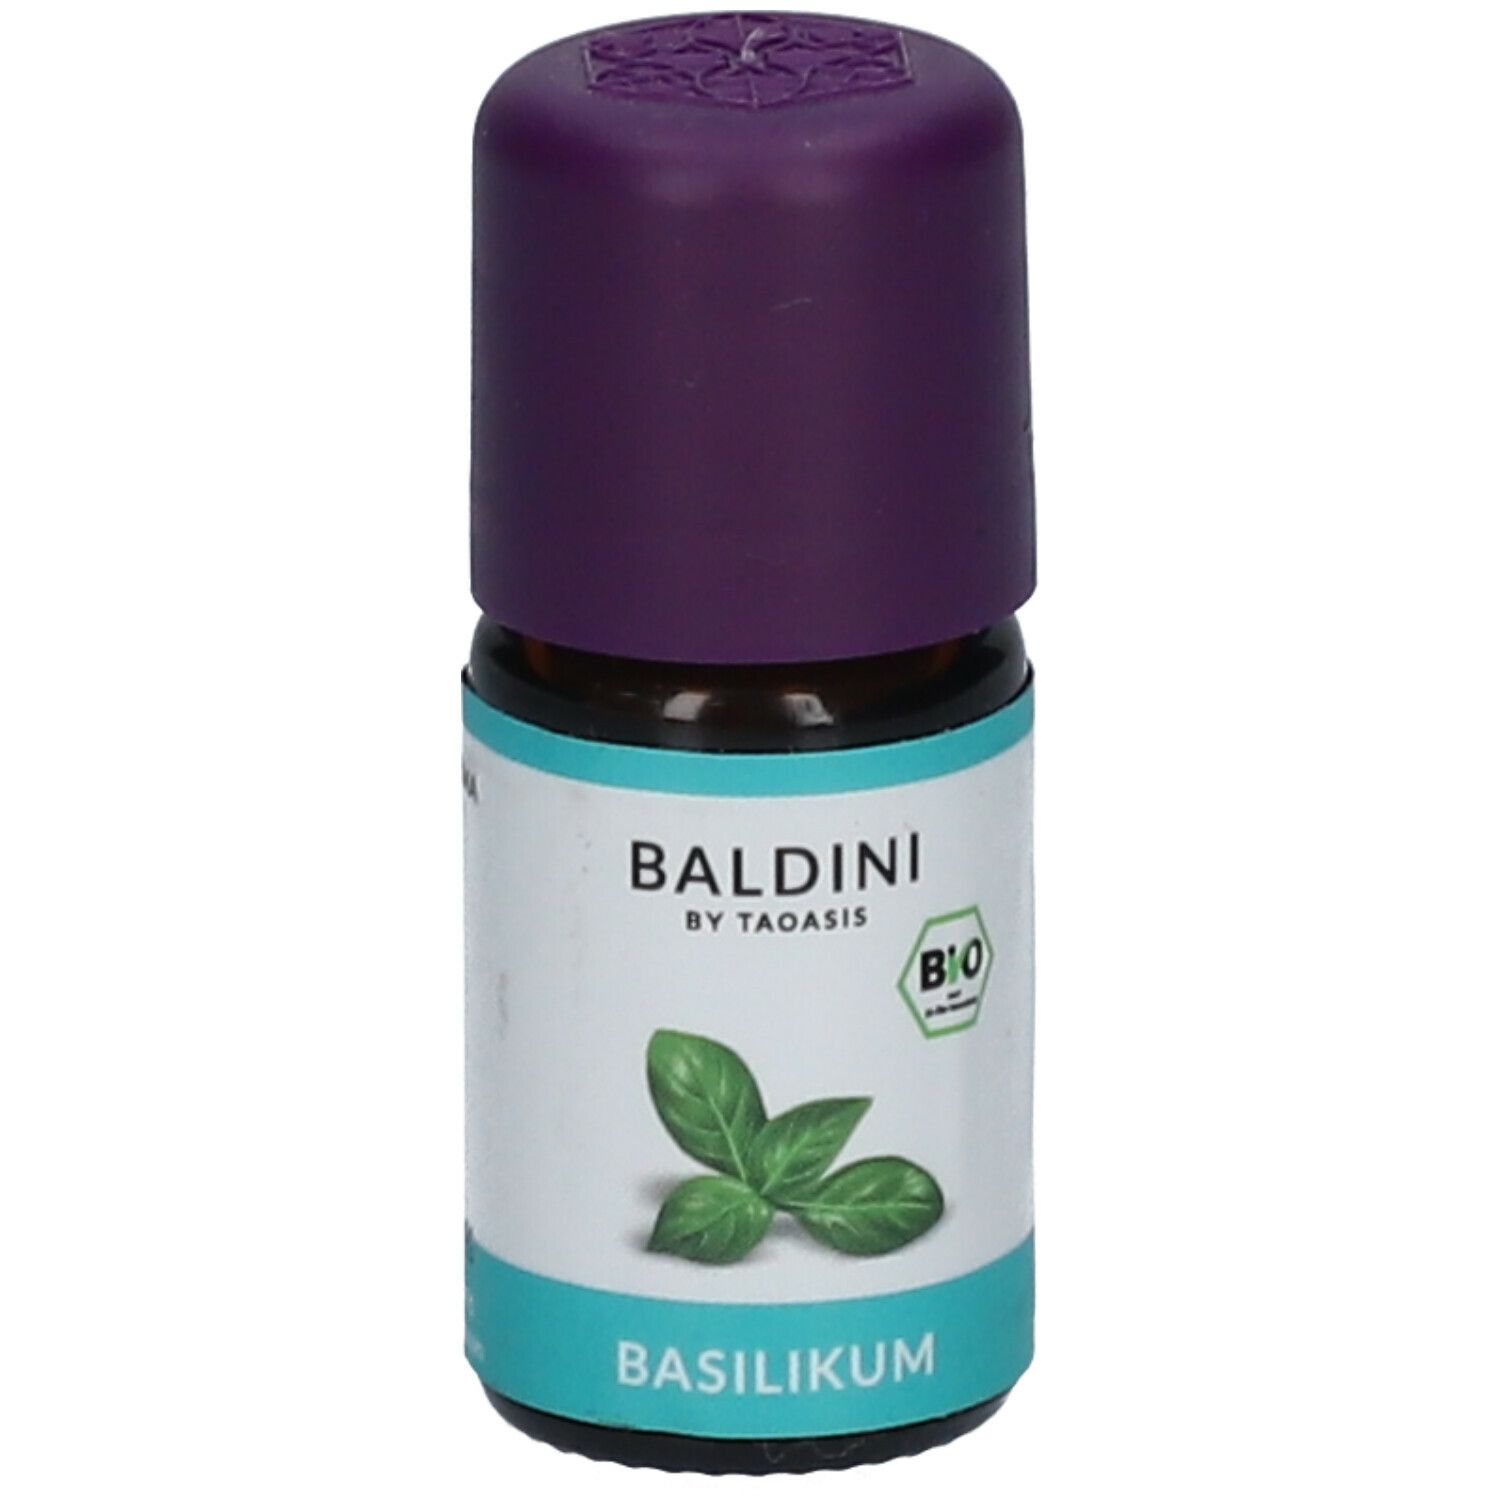 BALDINI BY TAOASIS BIO Basilikum Aromaöl